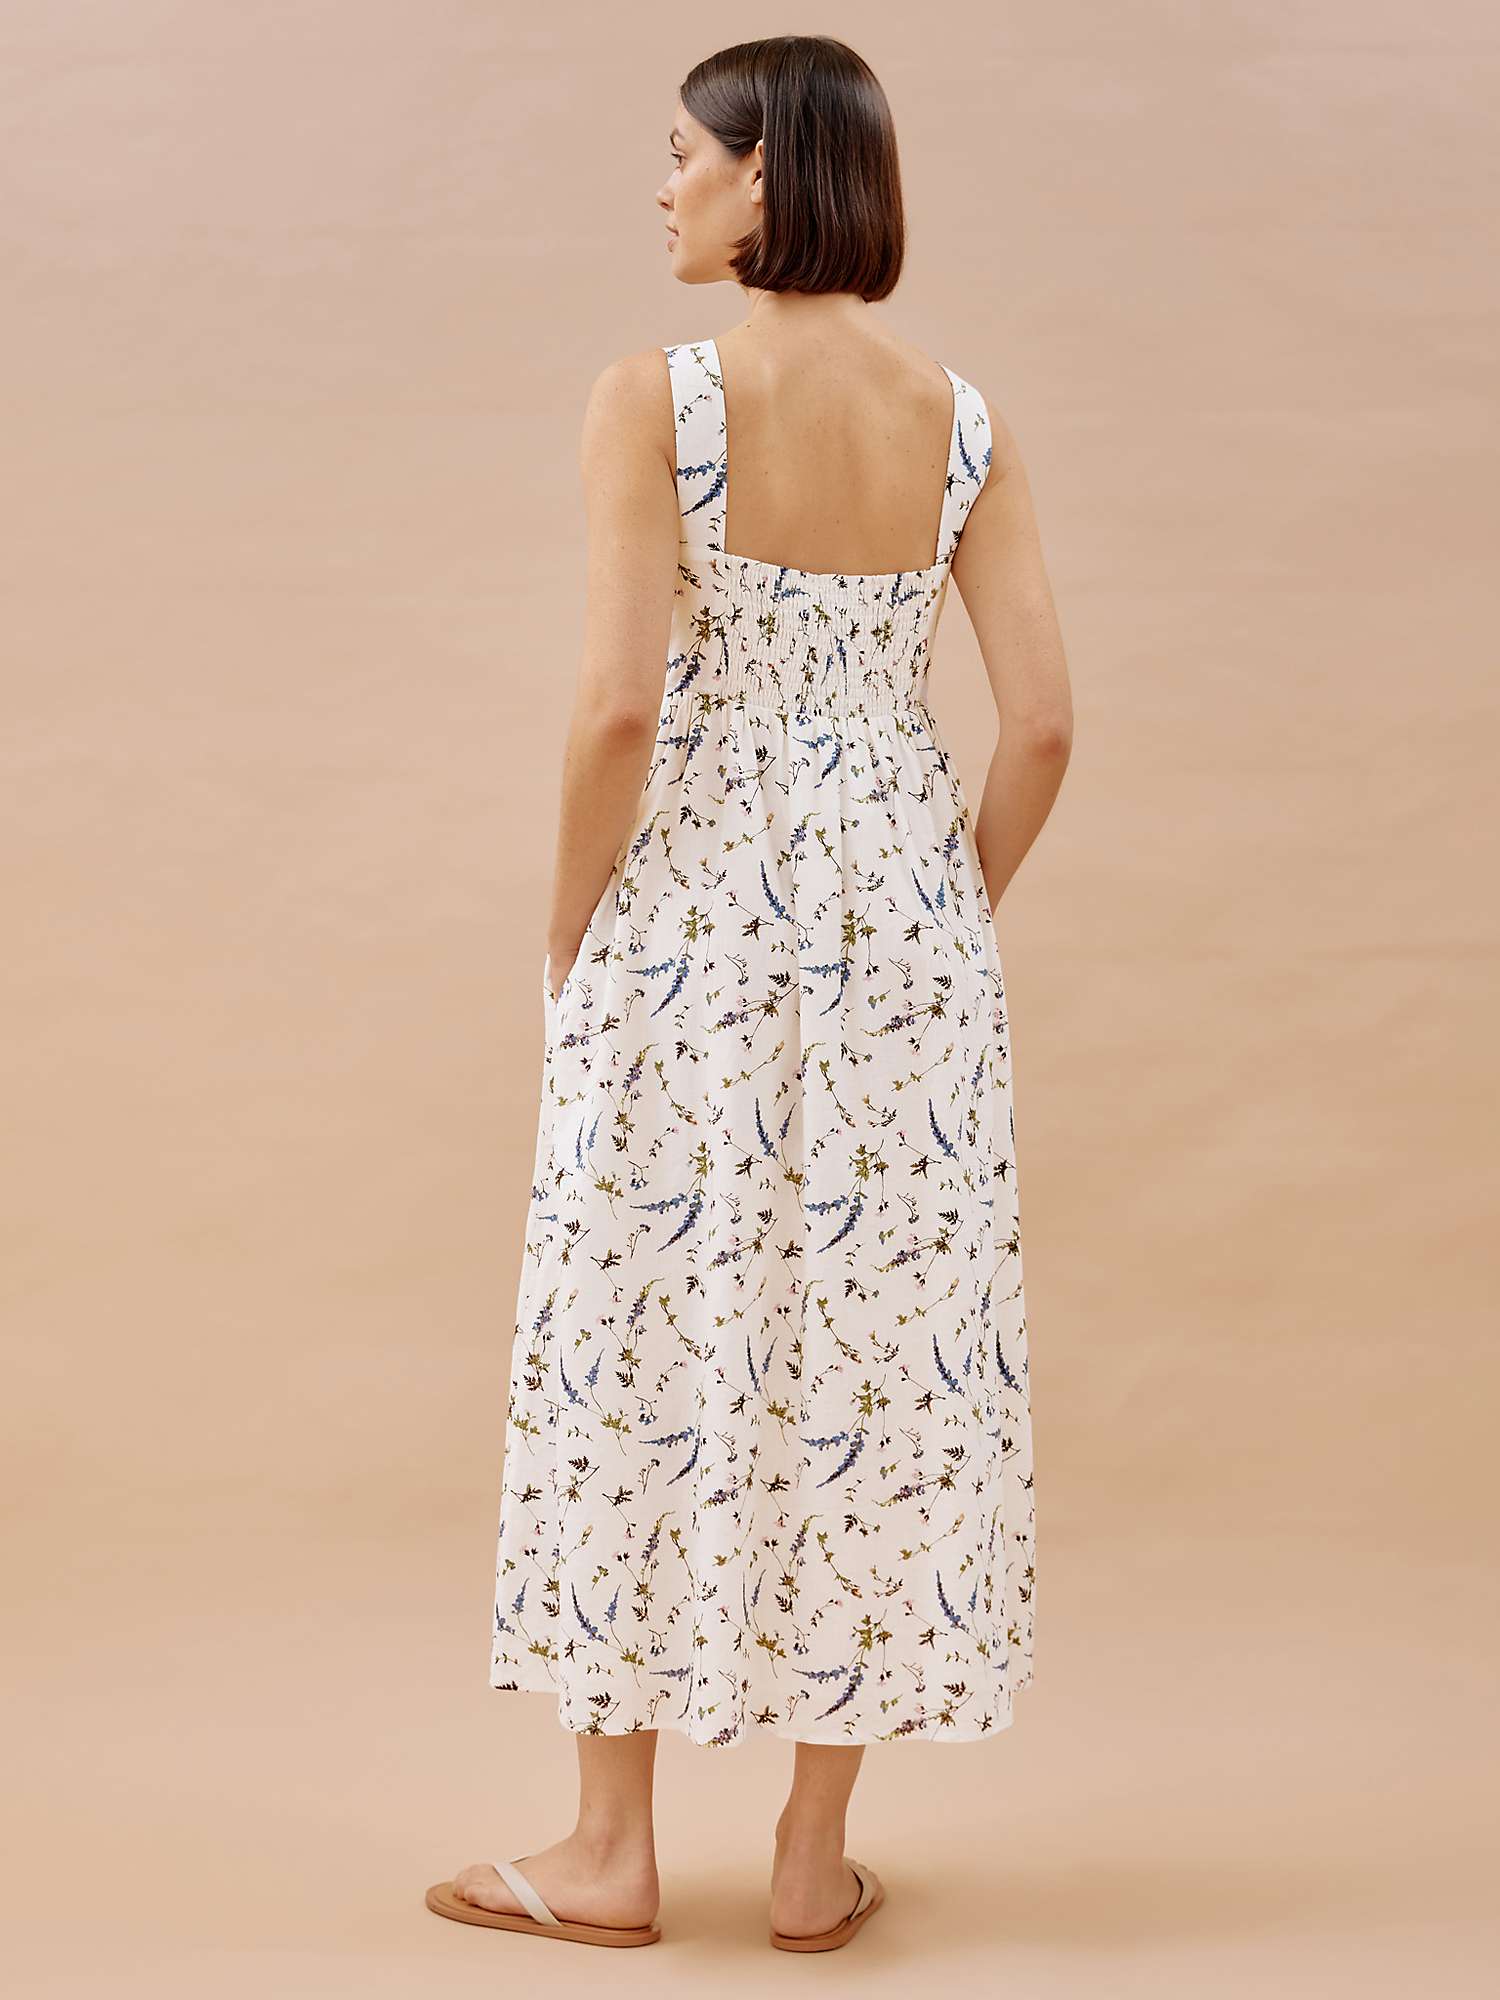 Buy Albaray Sprig Floral Dress, White Online at johnlewis.com